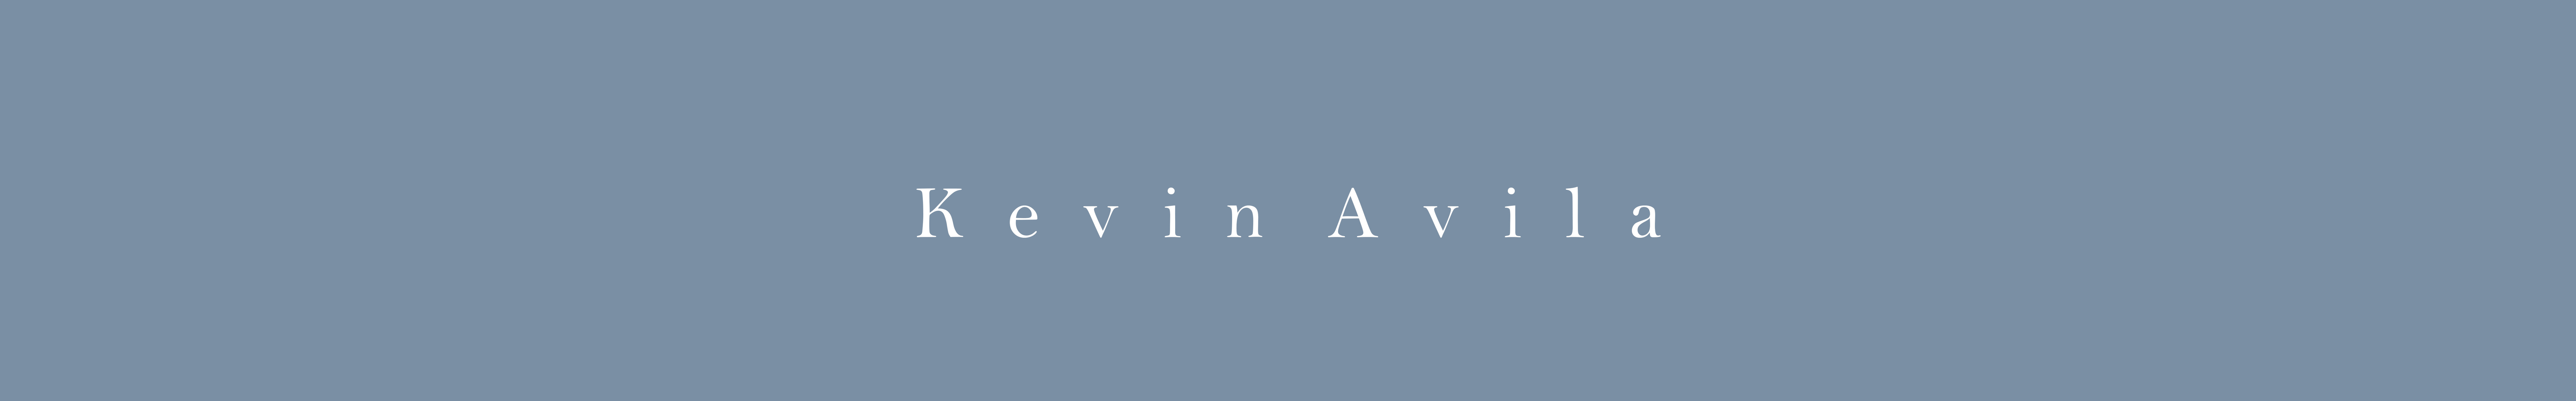 Kevin Avila's profile banner